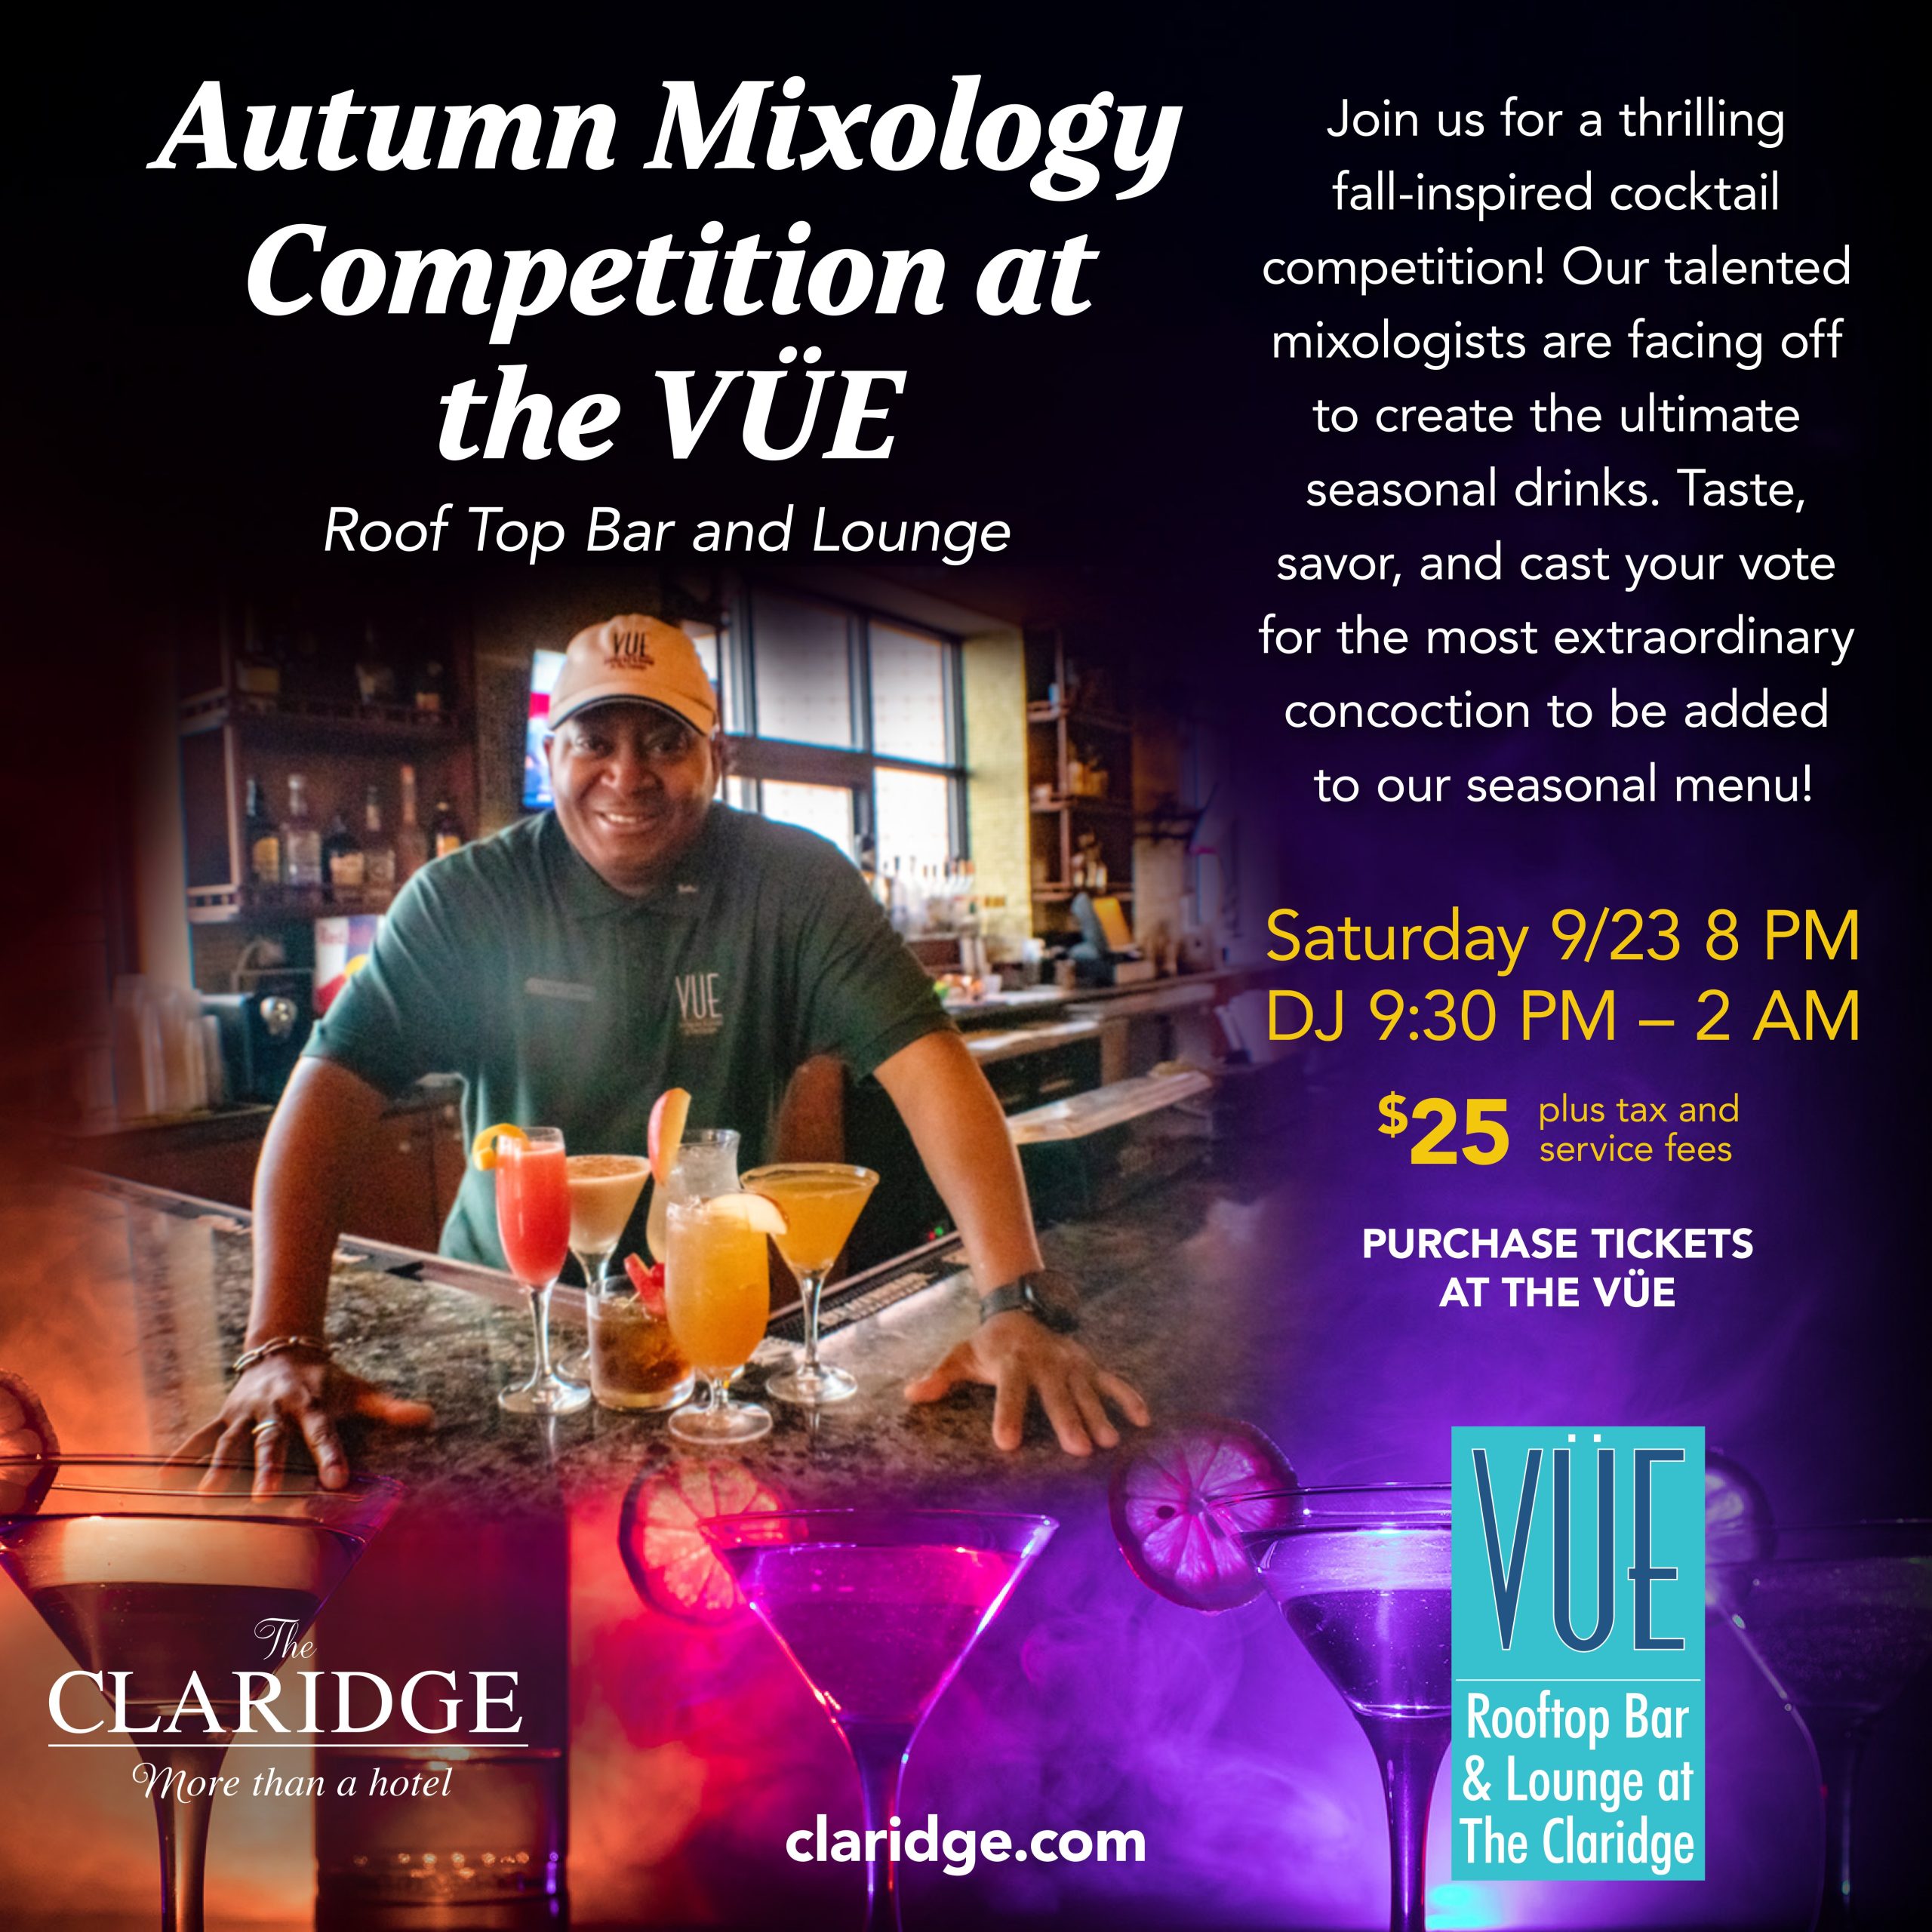 09 23 The Claridge Autumn Mixology